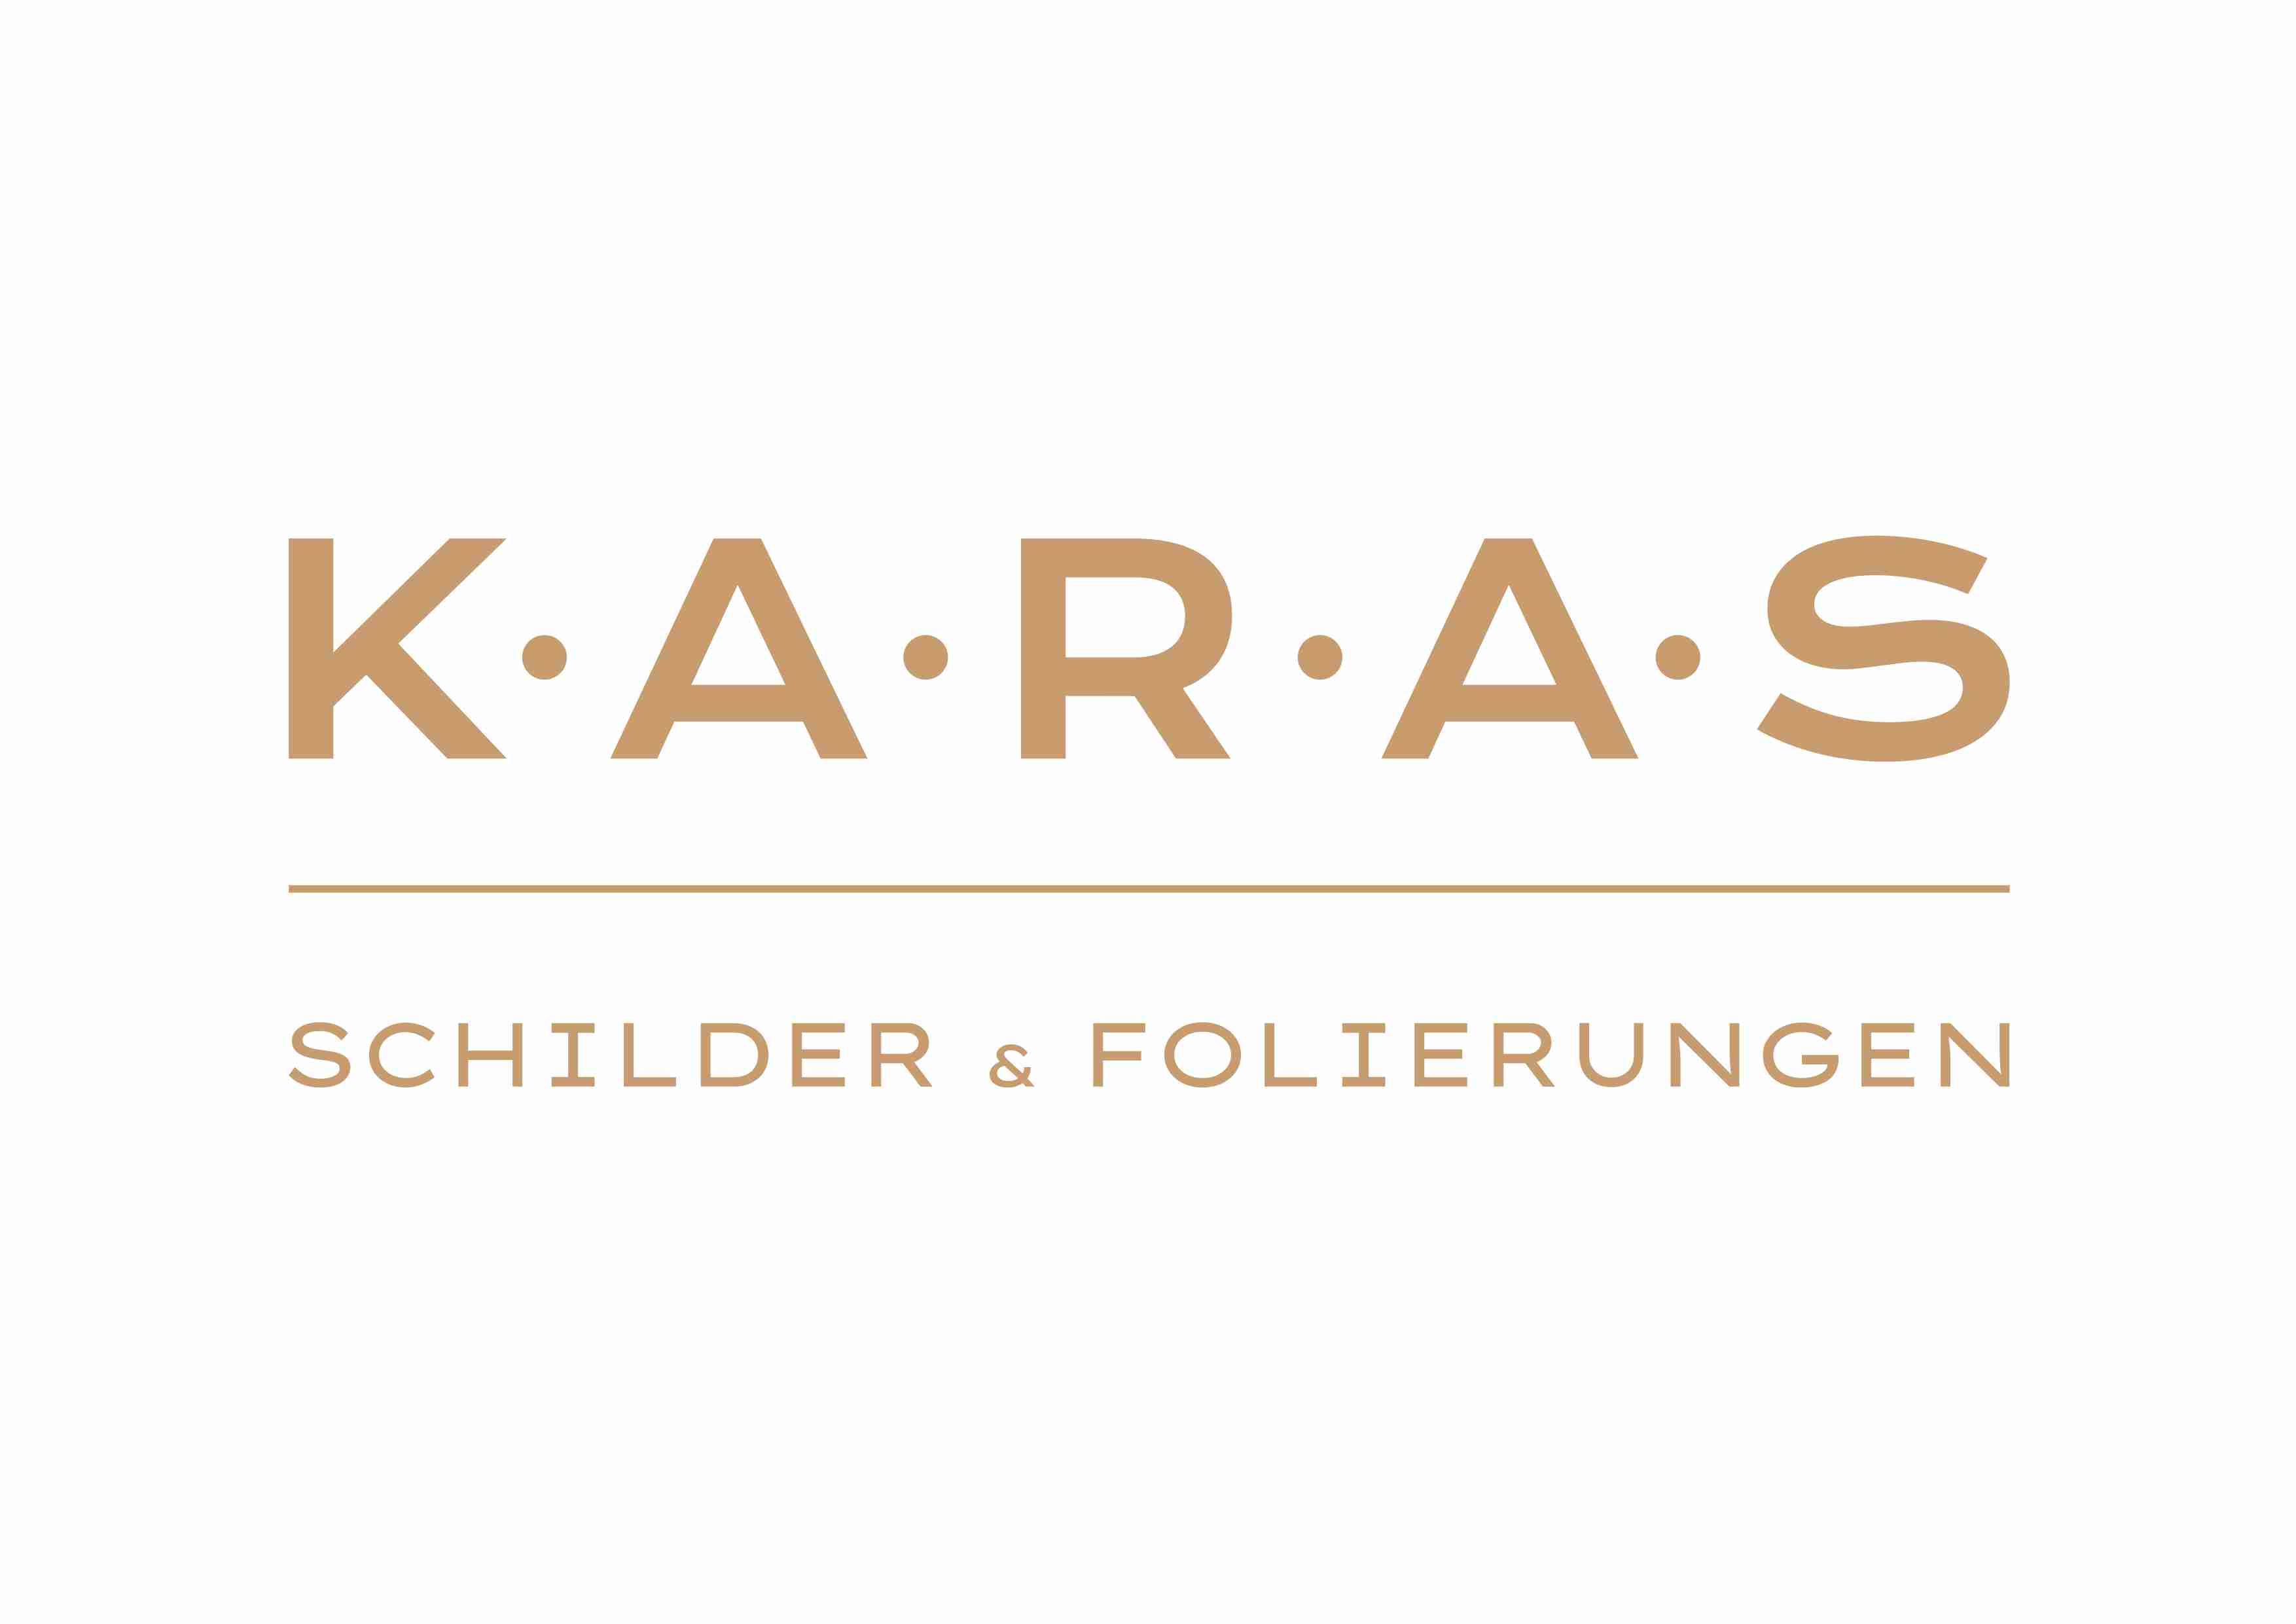 KARAS GmbH & Co KG